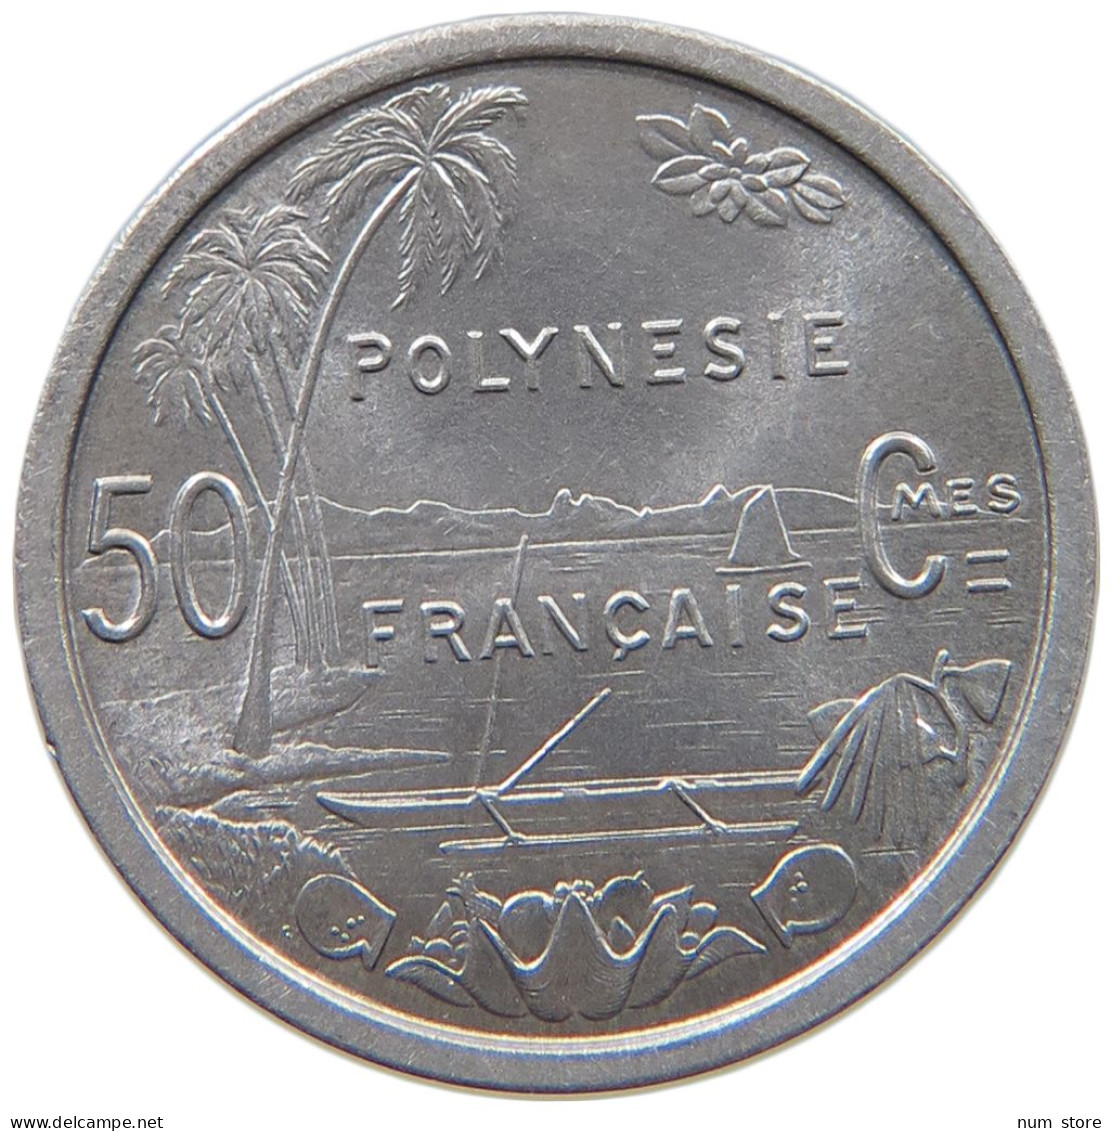 POLYNESIA 50 CENTIMES 1965  #c040 0749 - French Polynesia